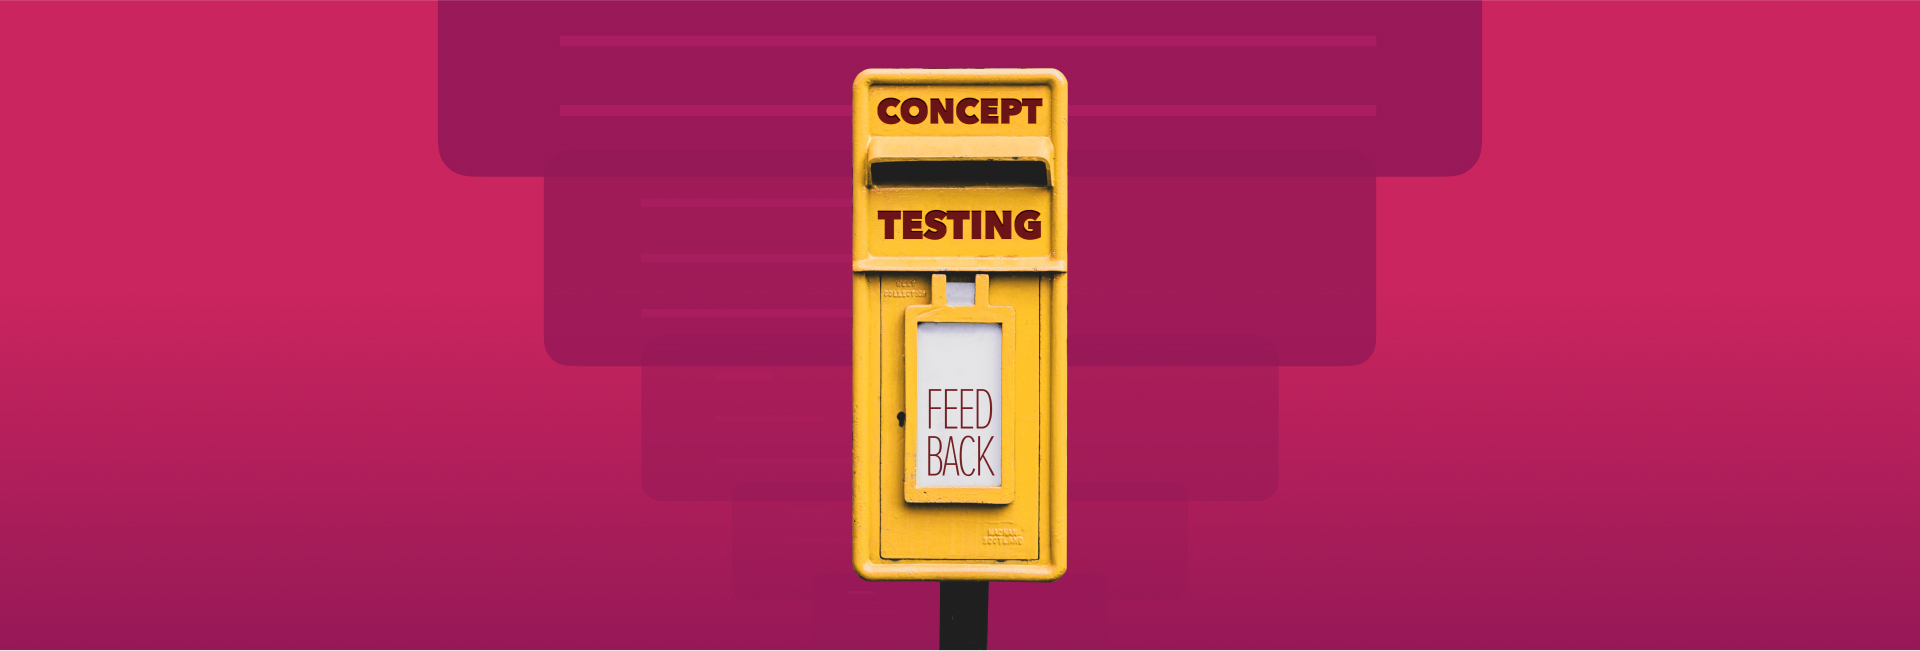 Hiểu hơn về Concept Testing trong thiết kế